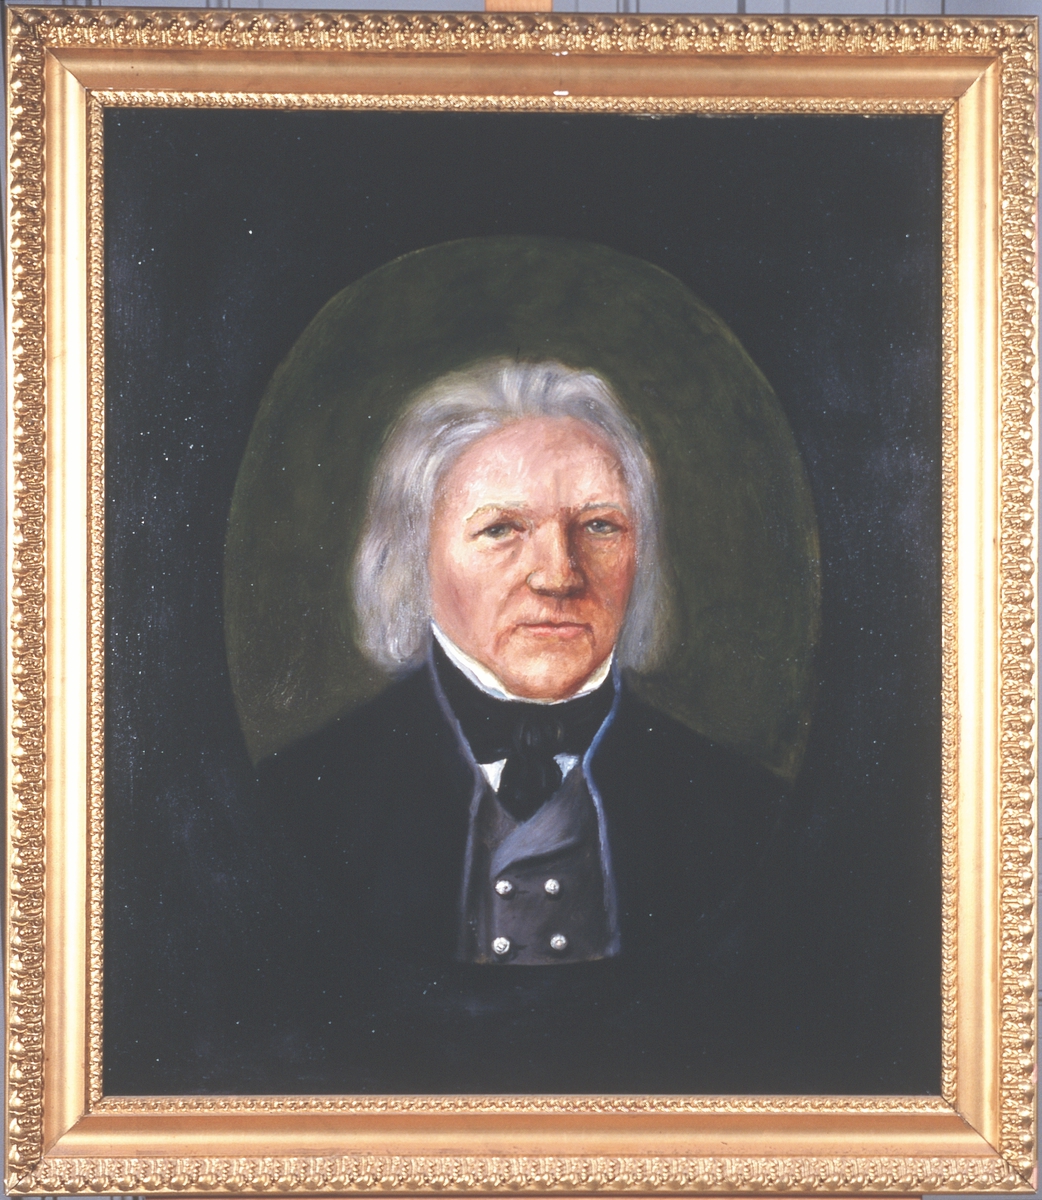 Portrett av eidsvollsmann Peder Hjermand
Mann innskrevet i oval, grått skulderlangt hår.